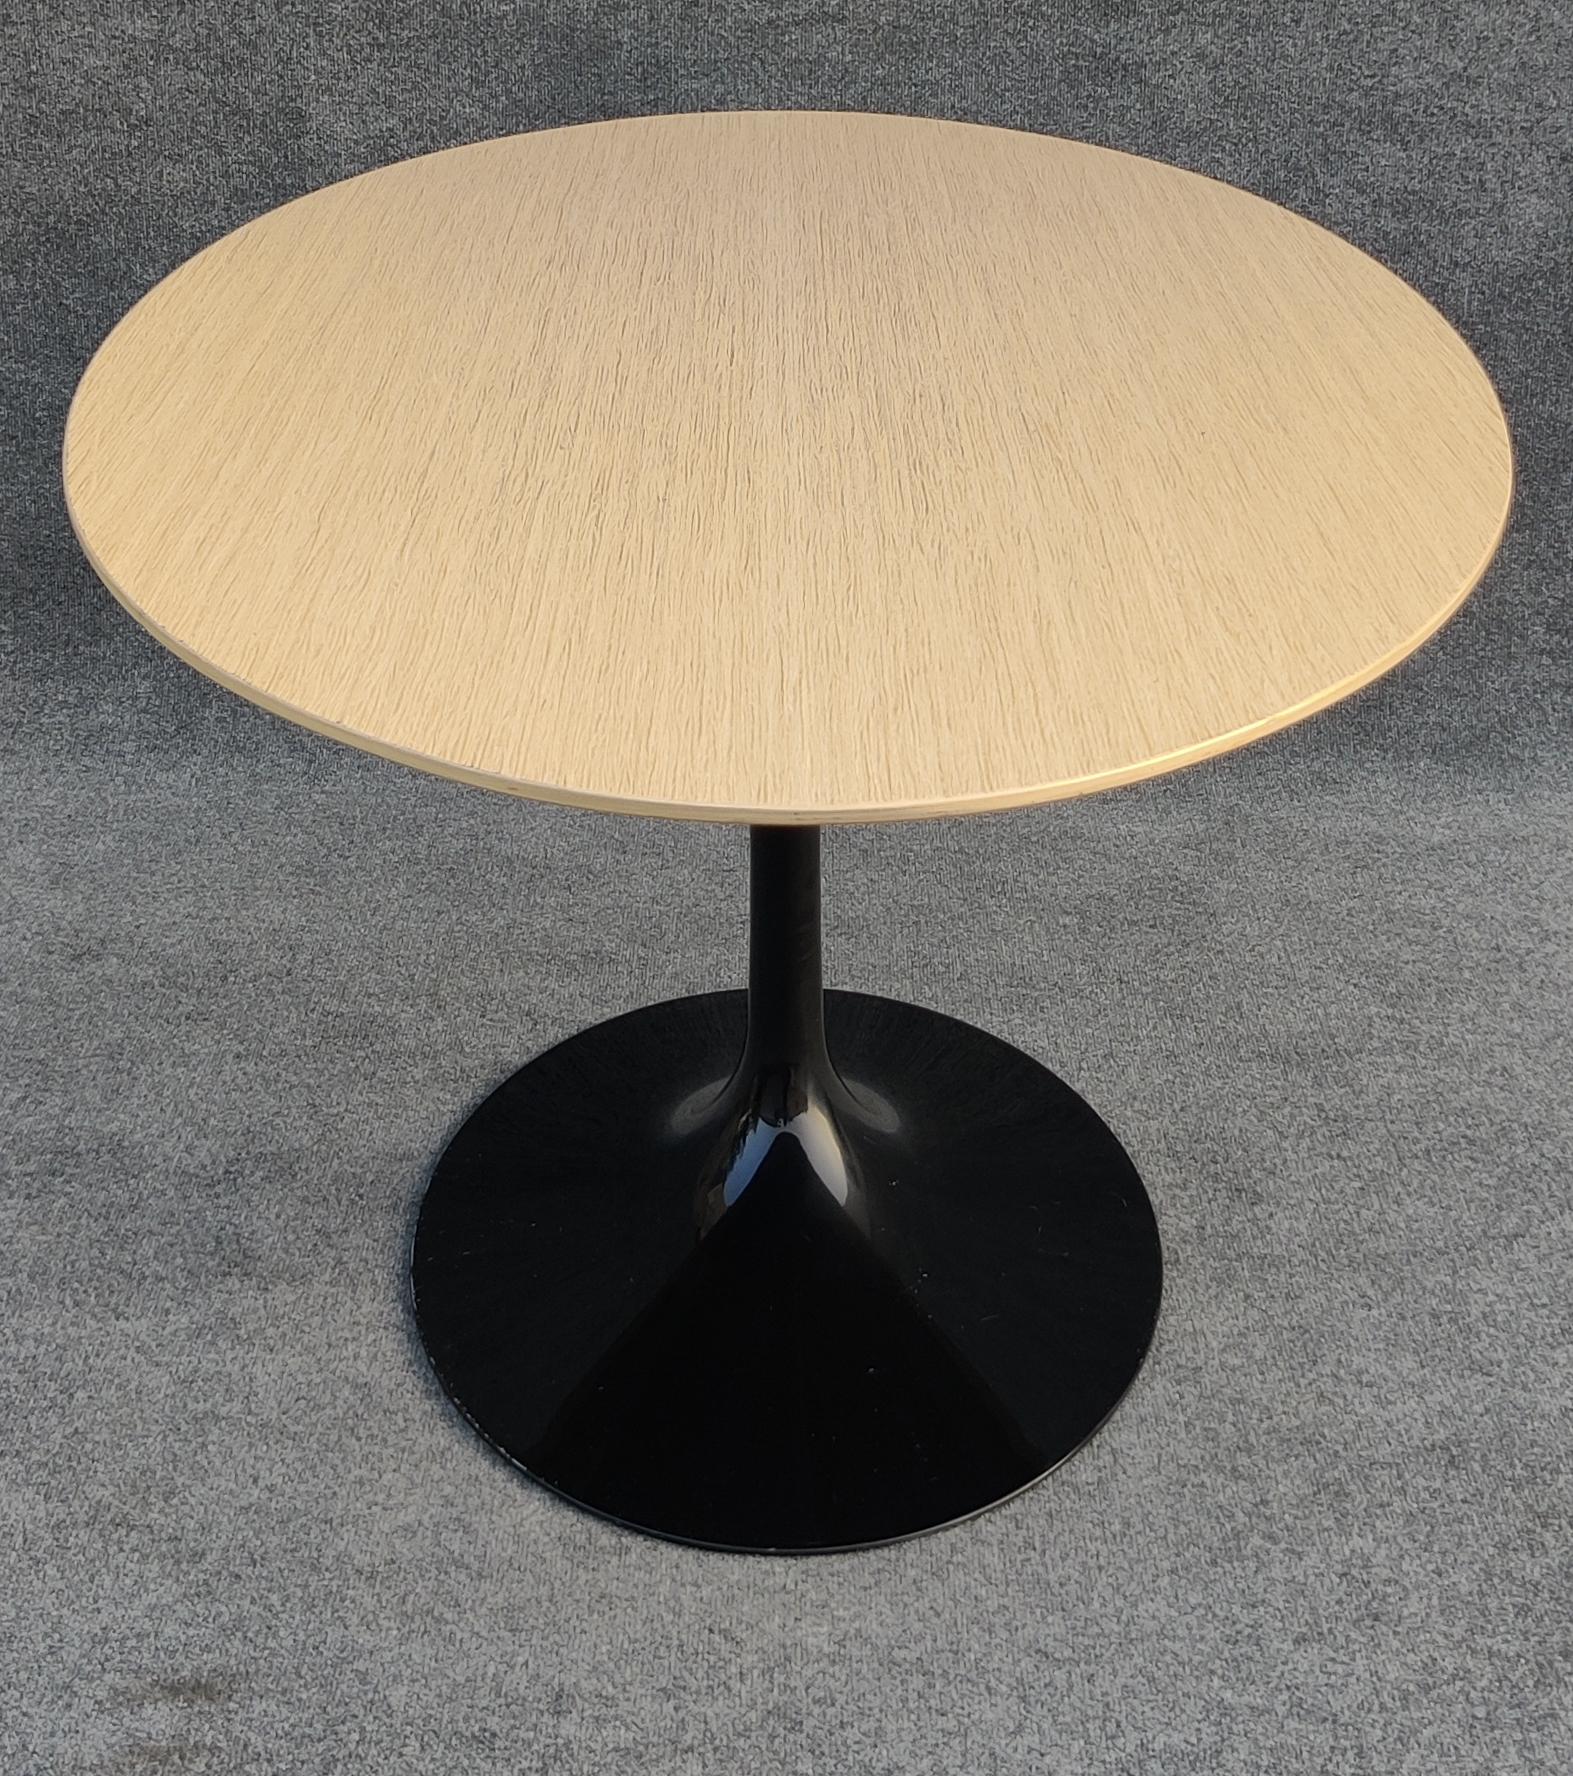 Mid-Century Modern Eero Saarinen Knoll Oval Tulip Dining Table 66x38